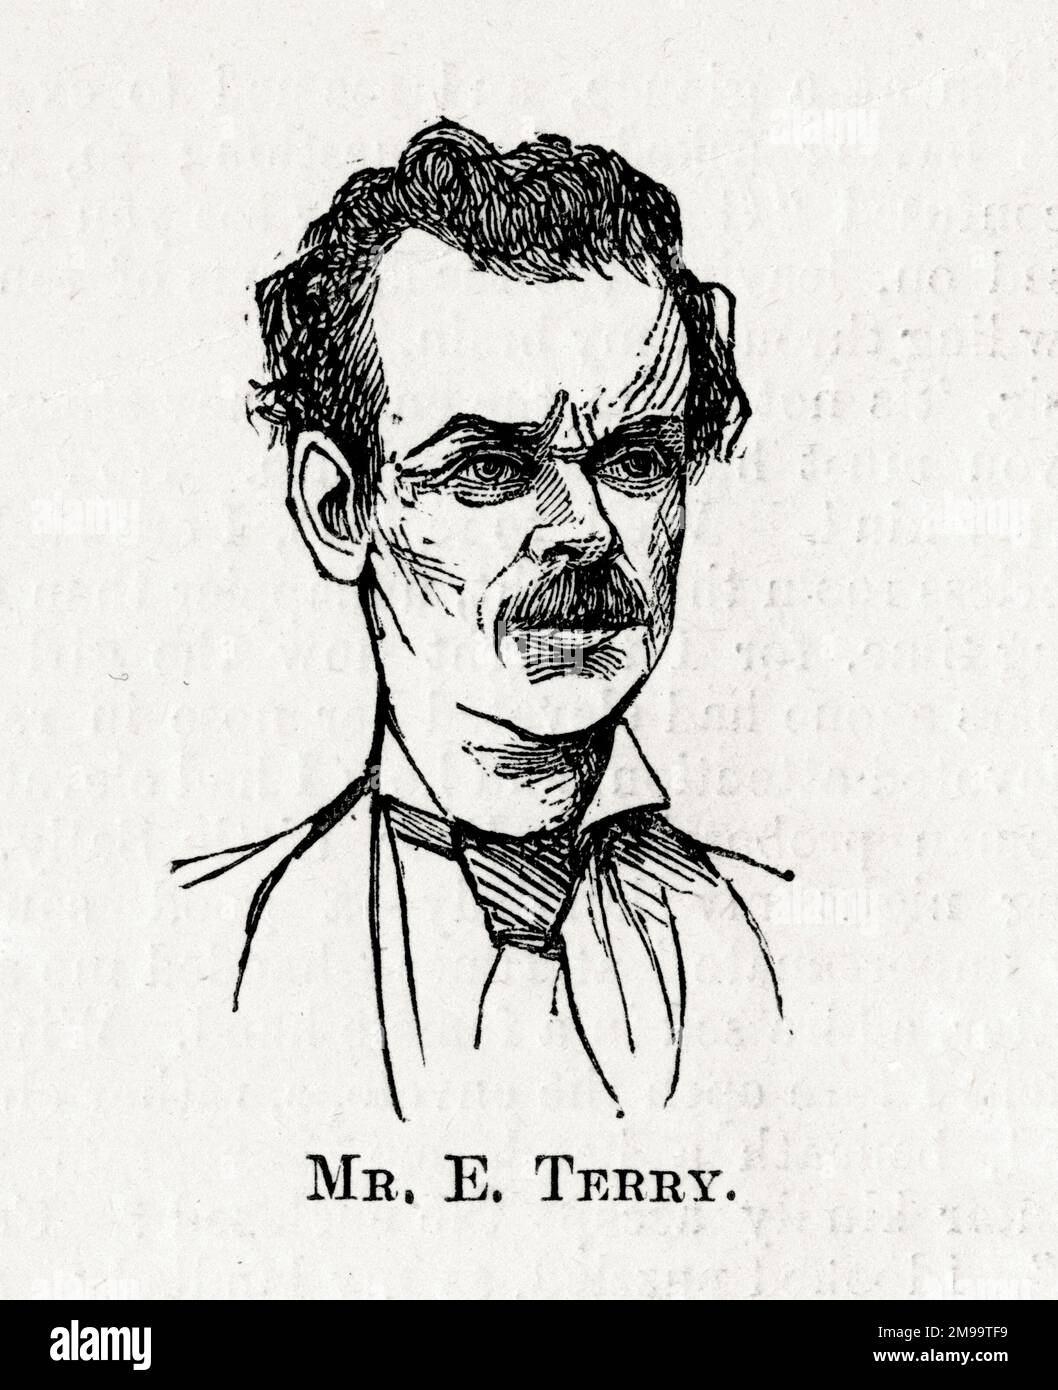 Retrato del actor y director de teatro inglés Edward O'Connor Terry (1844-1912). Foto de stock